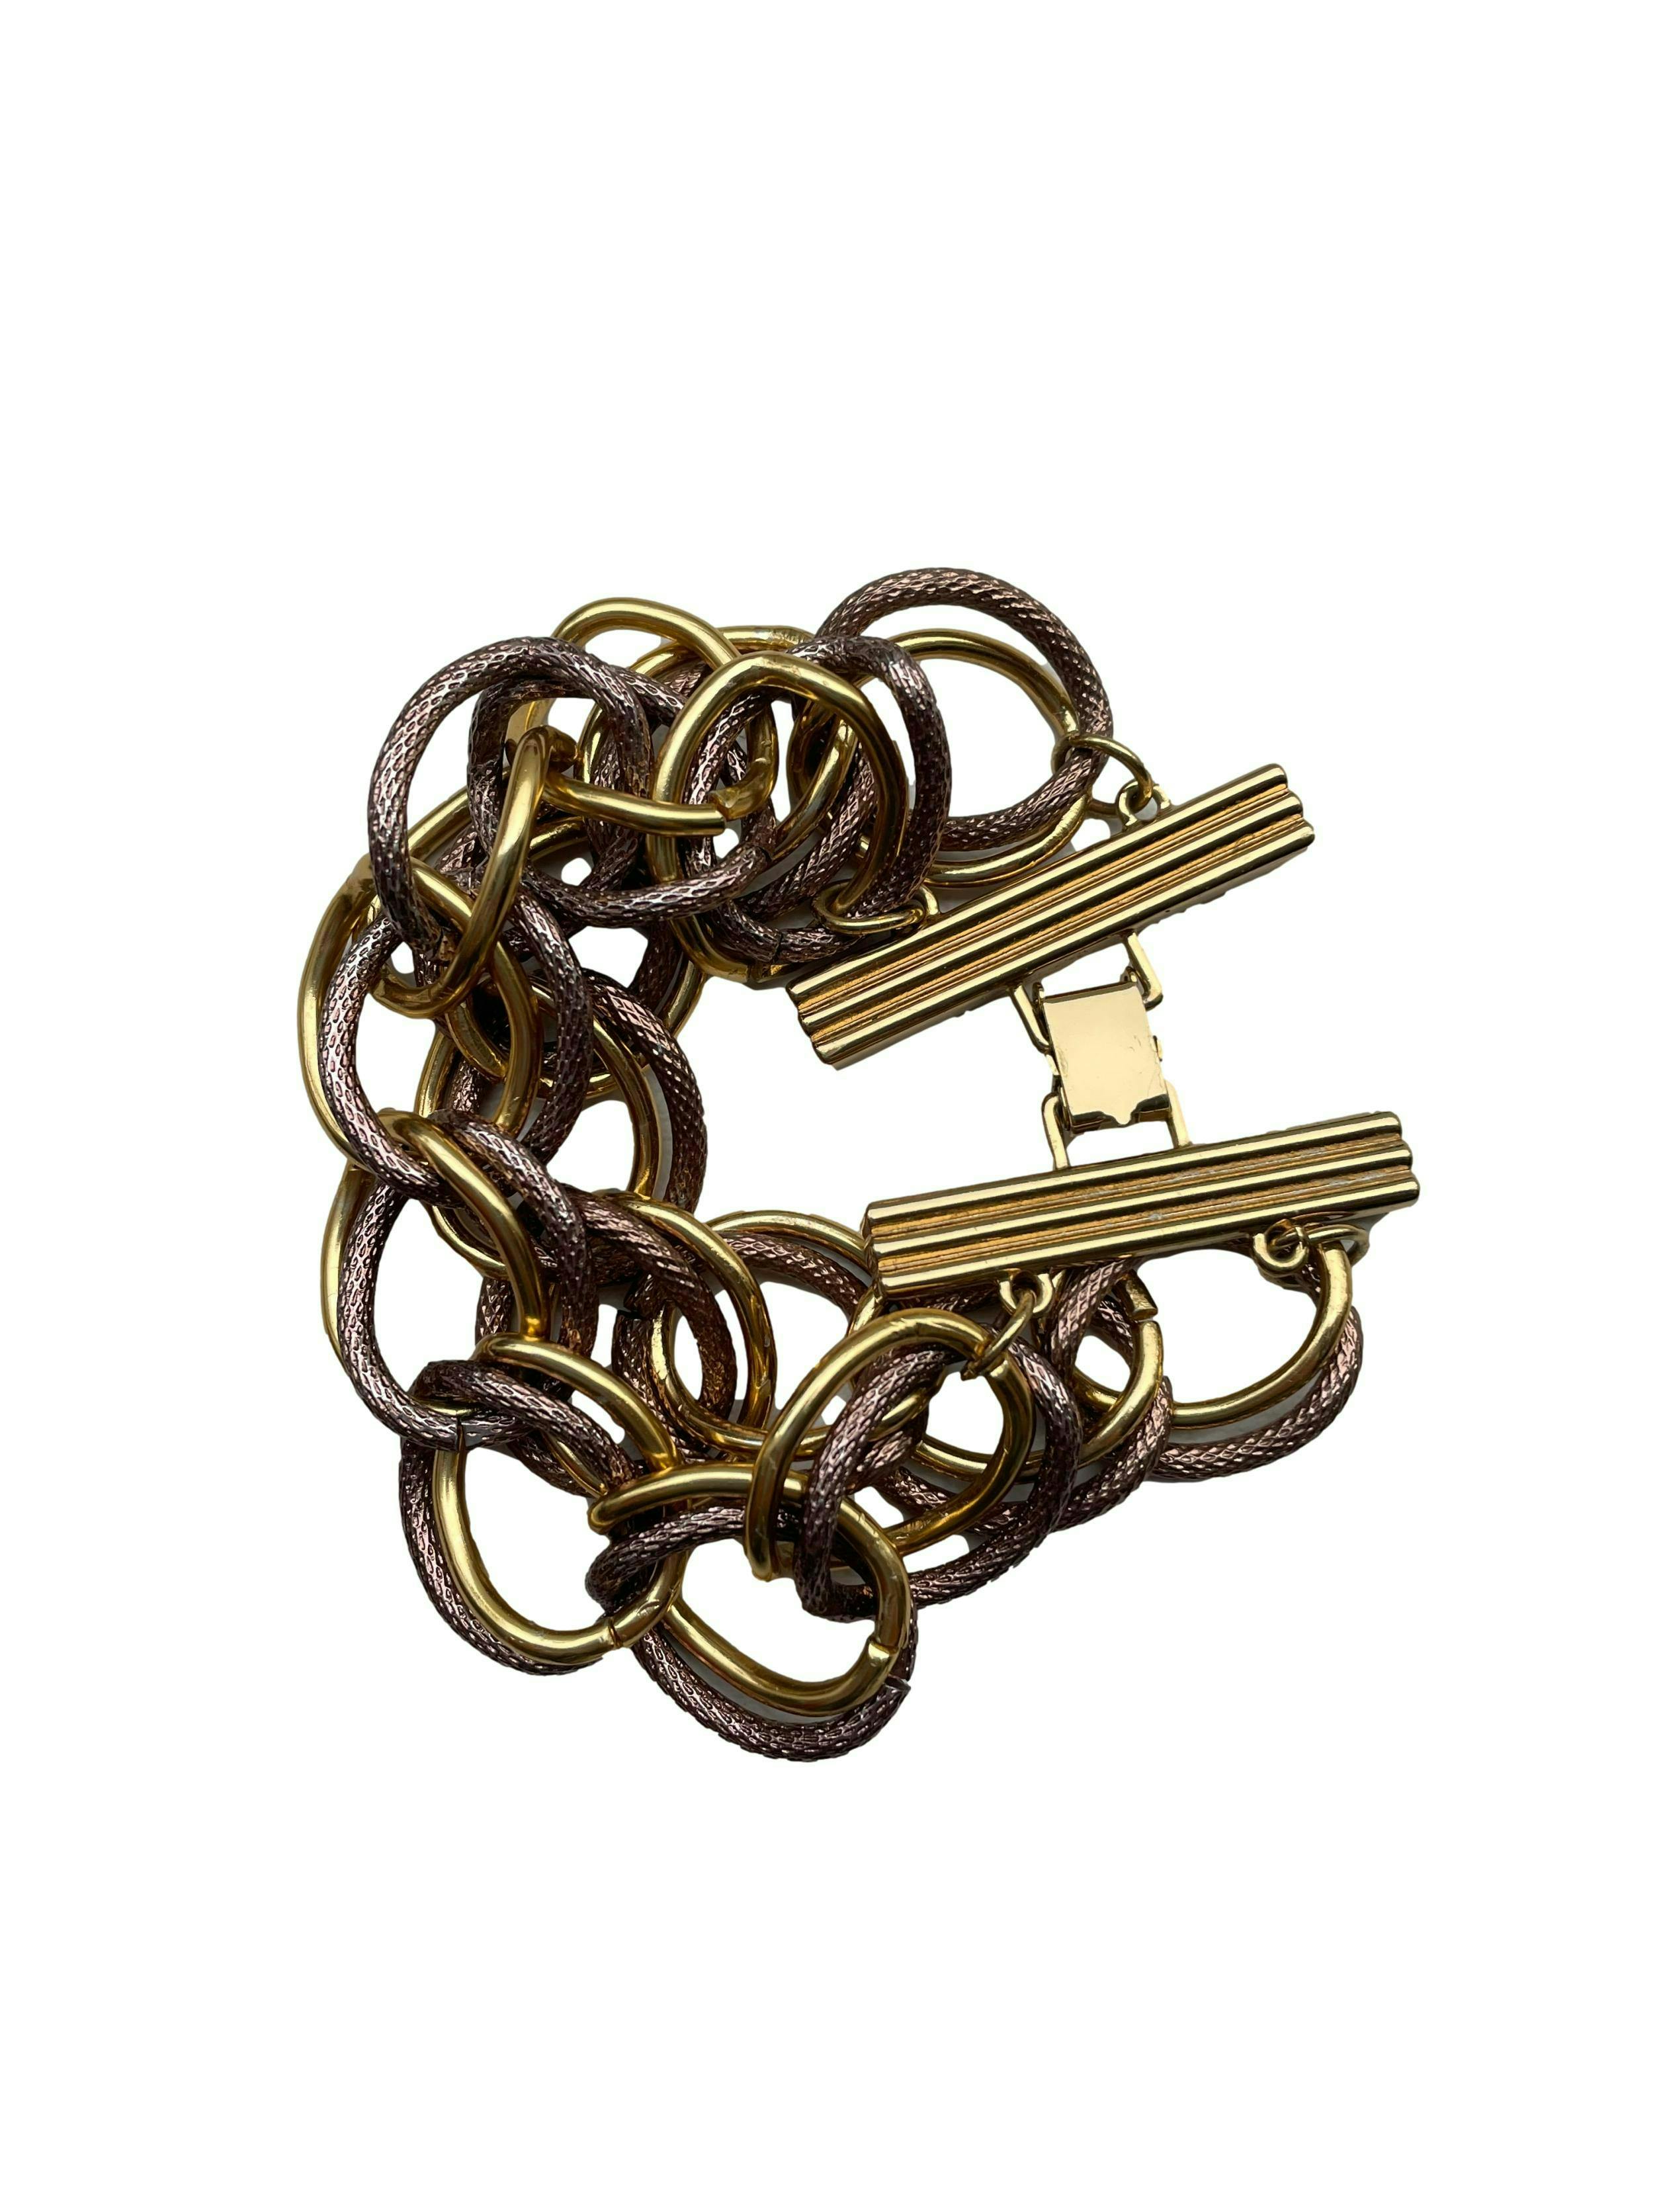 Pulsera de metal con doble cadena en dorado y cobrizo, cierre tipo pato. Con bolsita protectora. Largo 20cm, Ancho 5cm.